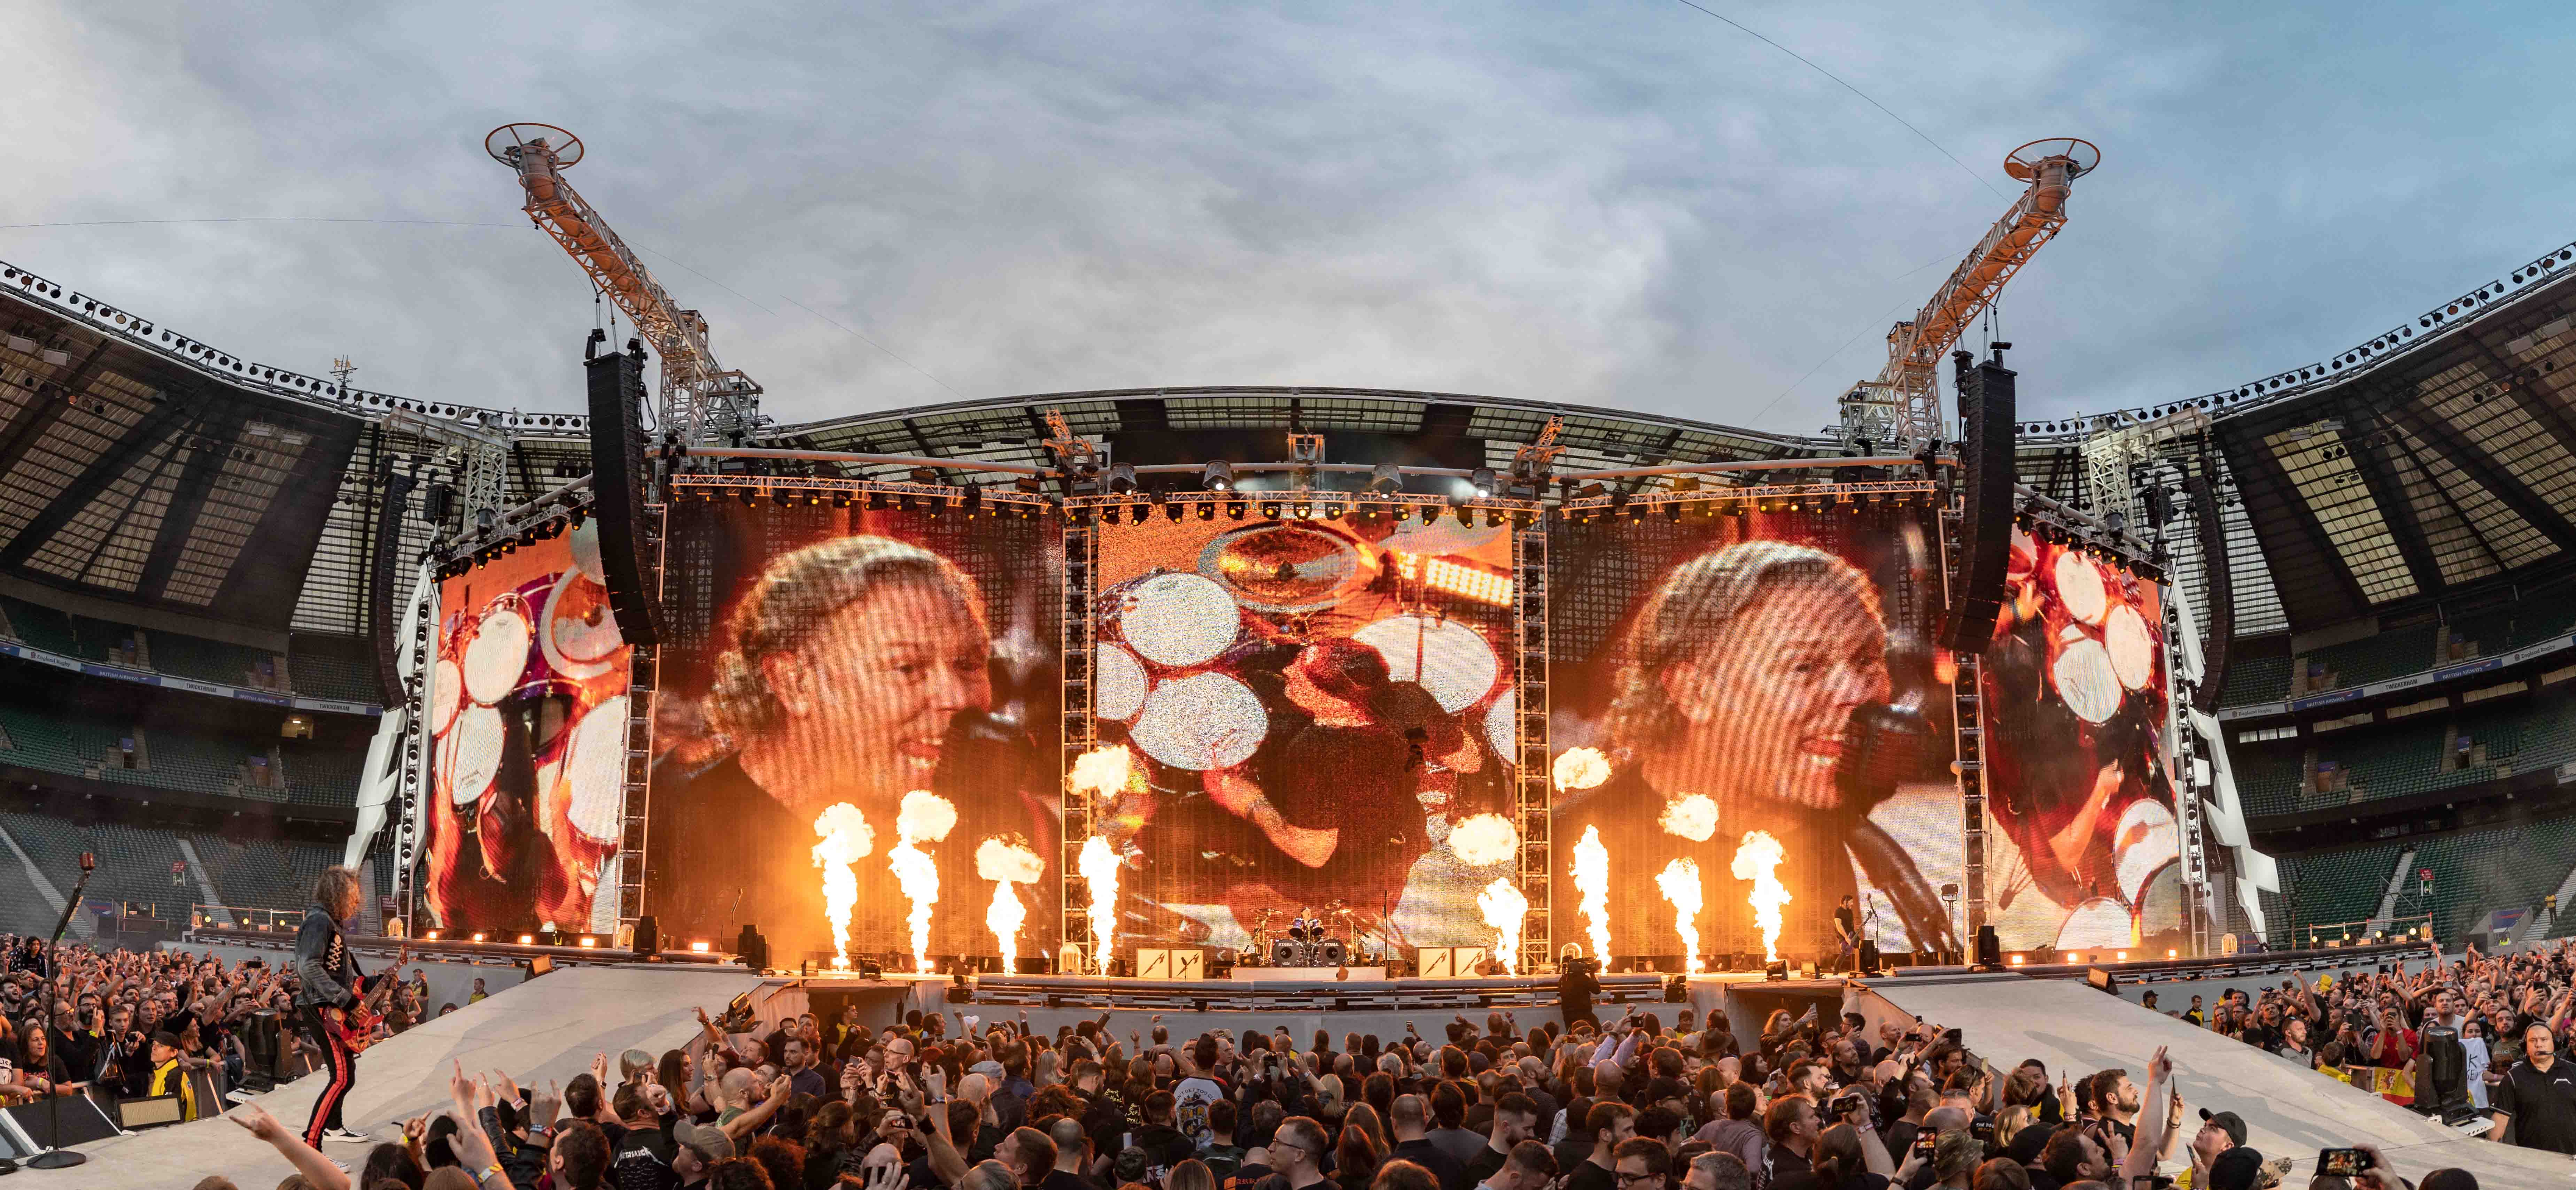 Confirmado show do Metallica em São Paulo VEJA SÃO PAULO